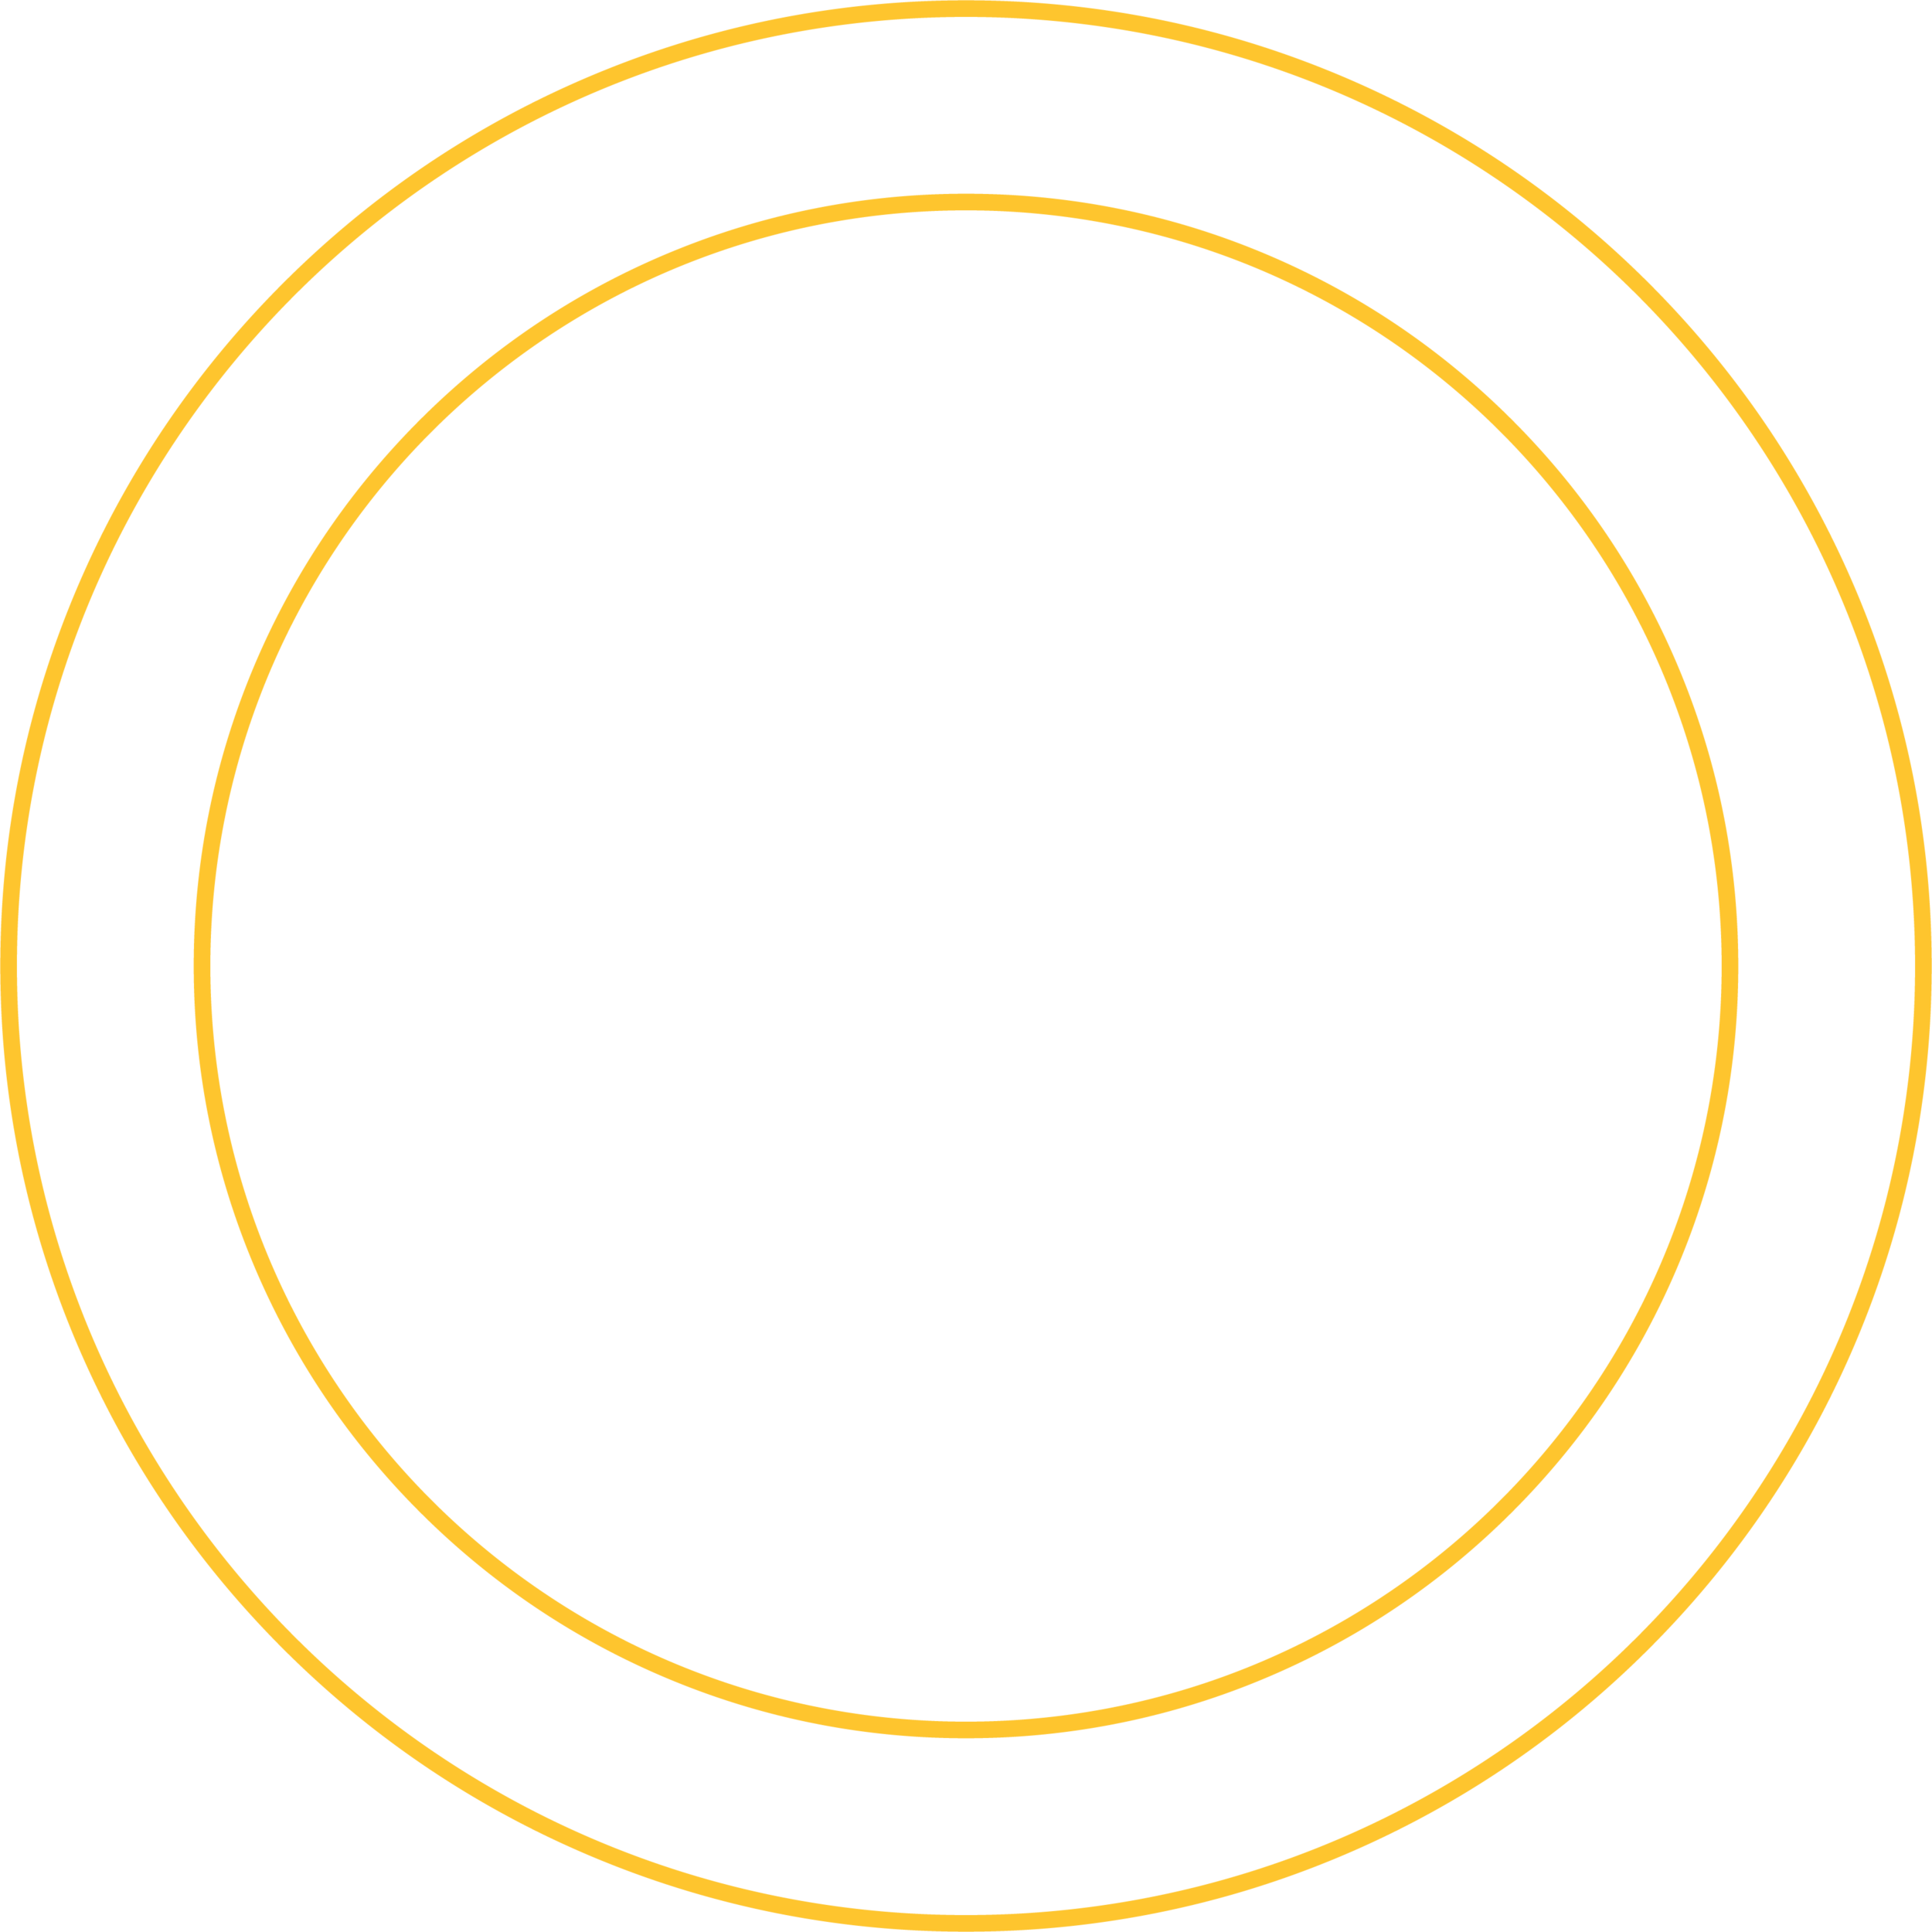  Energy Economic Development